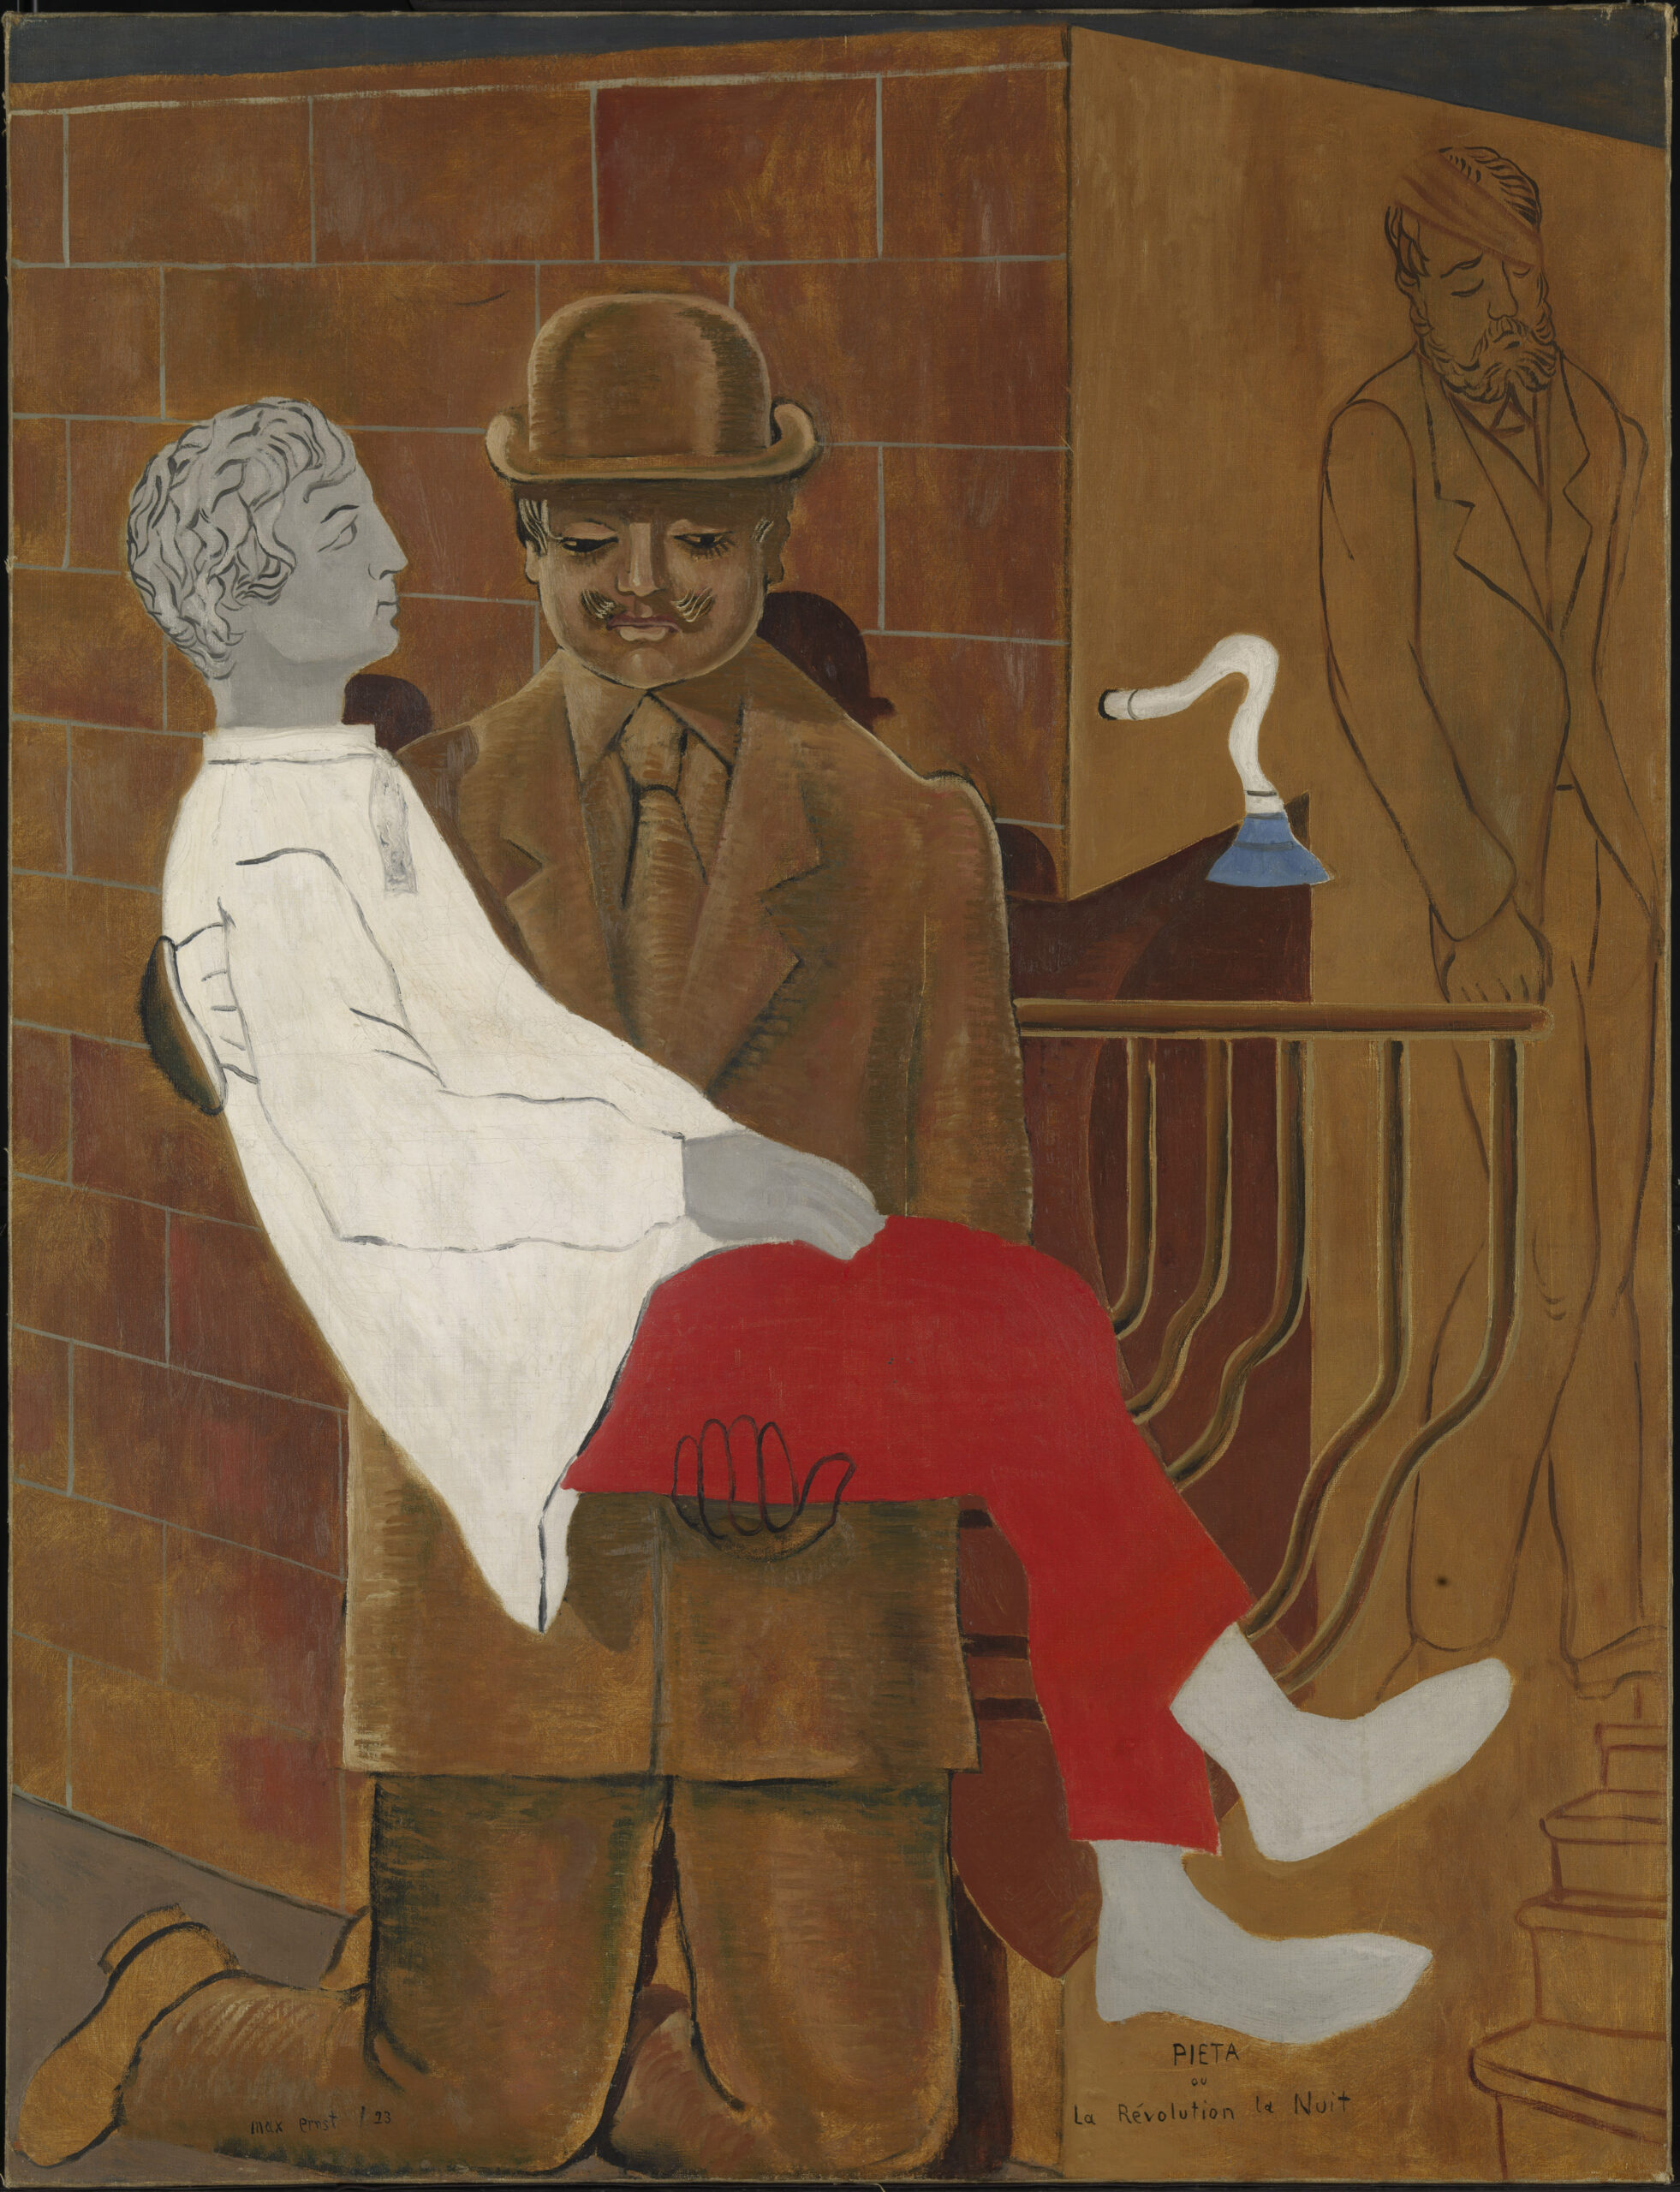 Max Ernst Pietà o La rivoluzione la notte, 1923 Olio su tela, 116,2 x 88,9 cm, Tate, acquisito nel 1981. Copyright Tate, London, 2022. Copyright Max Ernst by SIAE 2022